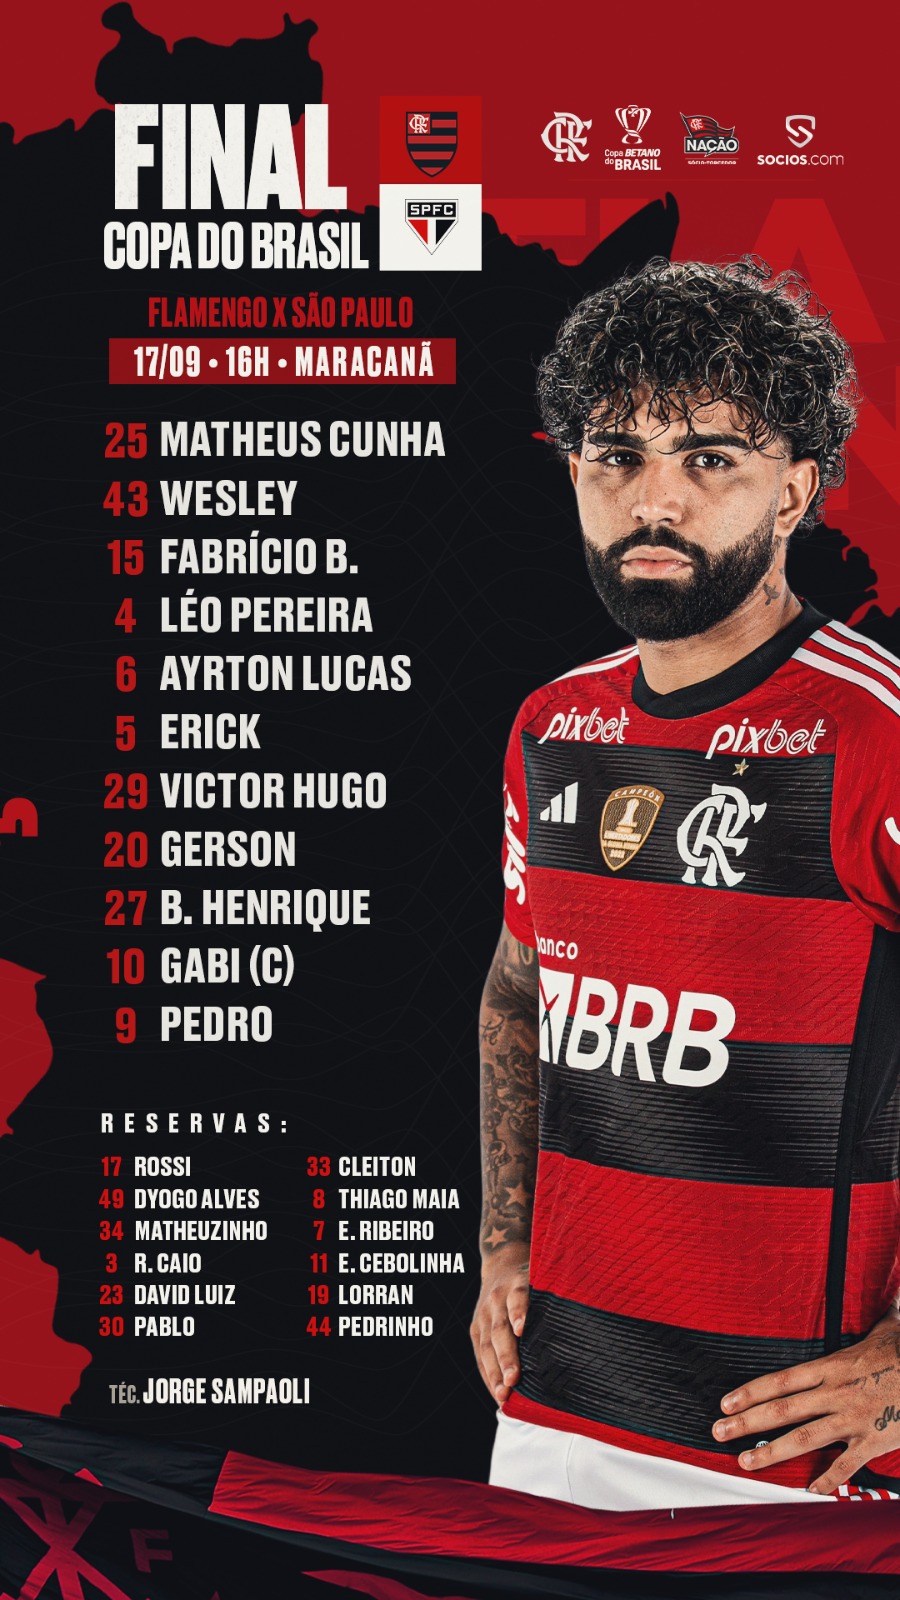 Nesse Domingo dia 24 se enfrentam São Paulo x Flamengo em um jogo